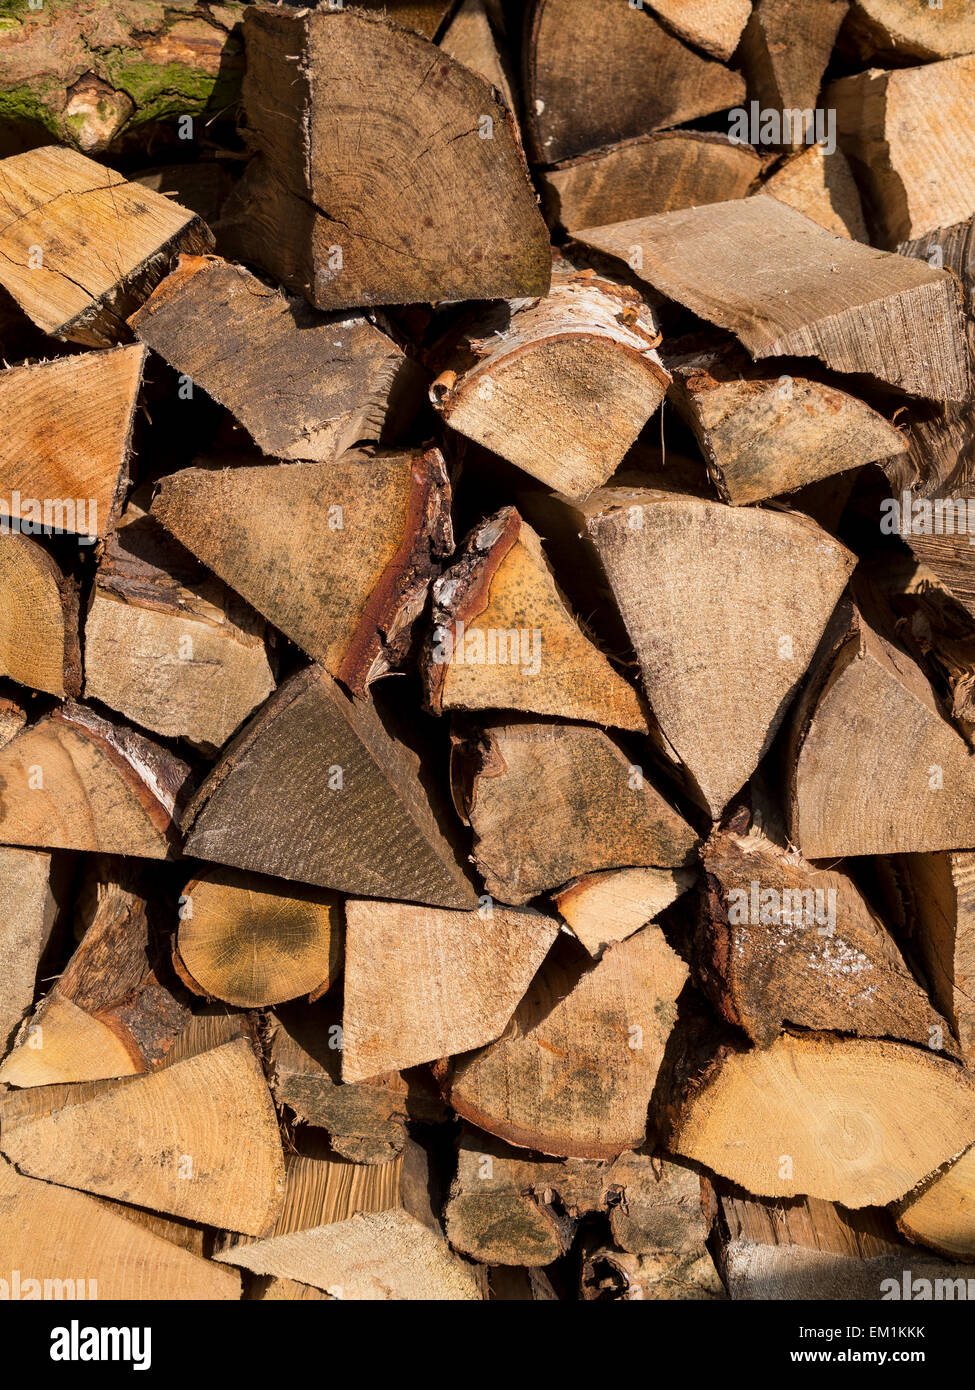 wood pile, Derbyshire,UK Stock Photo